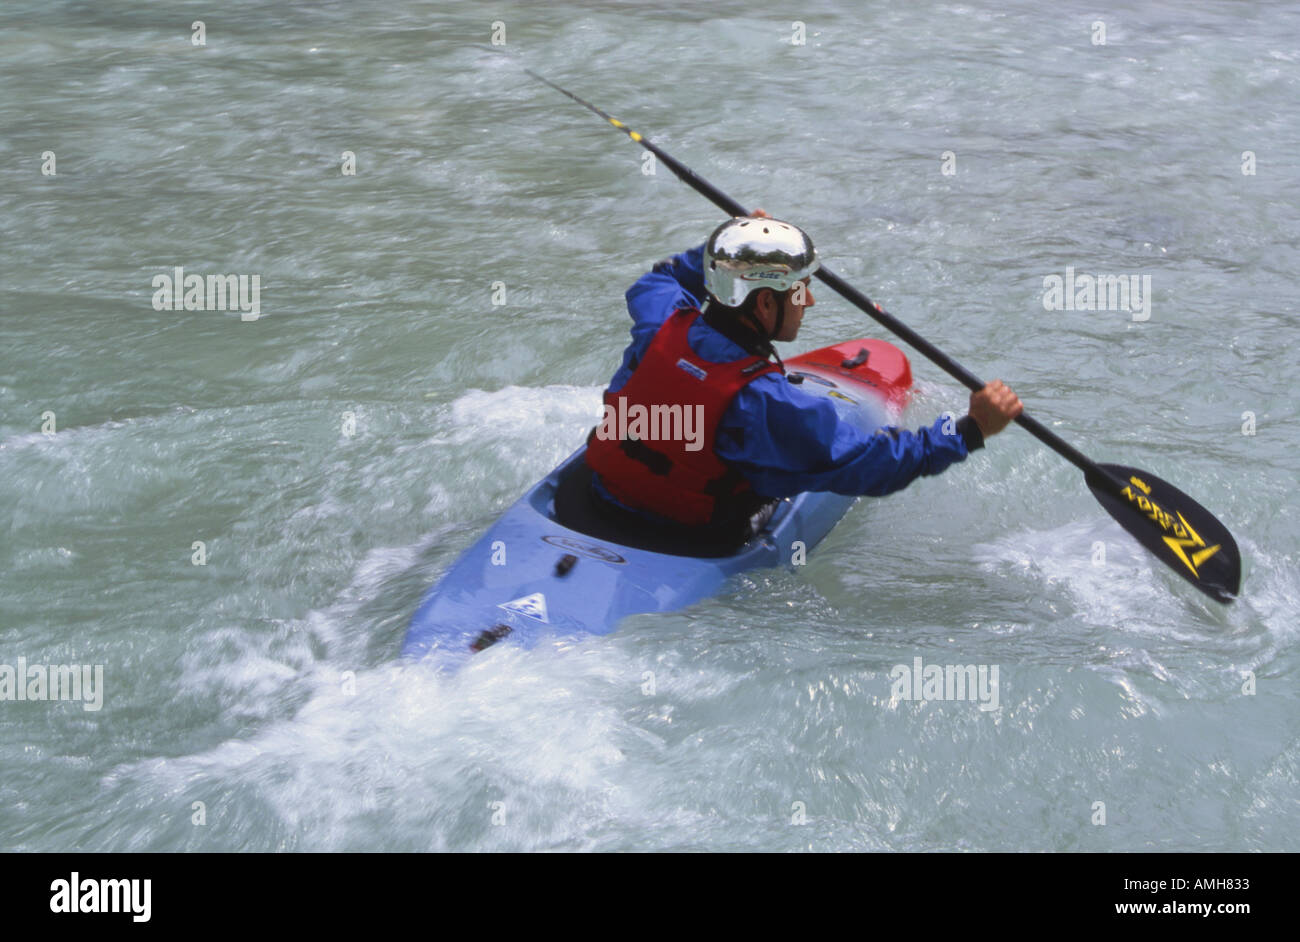 La kayakiste sur la rivière Soca près de Bovec Slovénie Banque D'Images